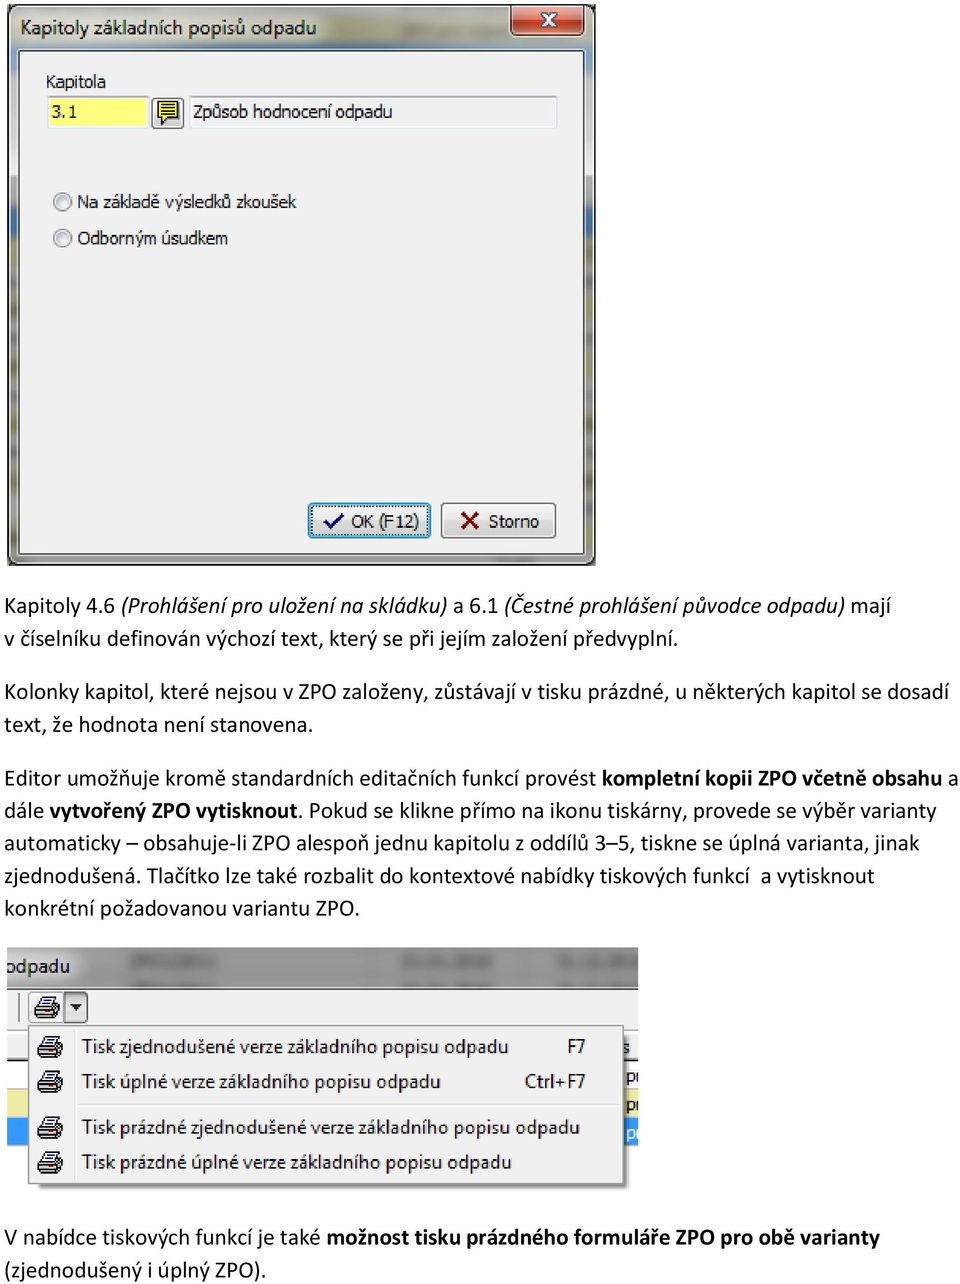 Editor umožňuje kromě standardních editačních funkcí provést kompletní kopii ZPO včetně obsahu a dále vytvořený ZPO vytisknout.